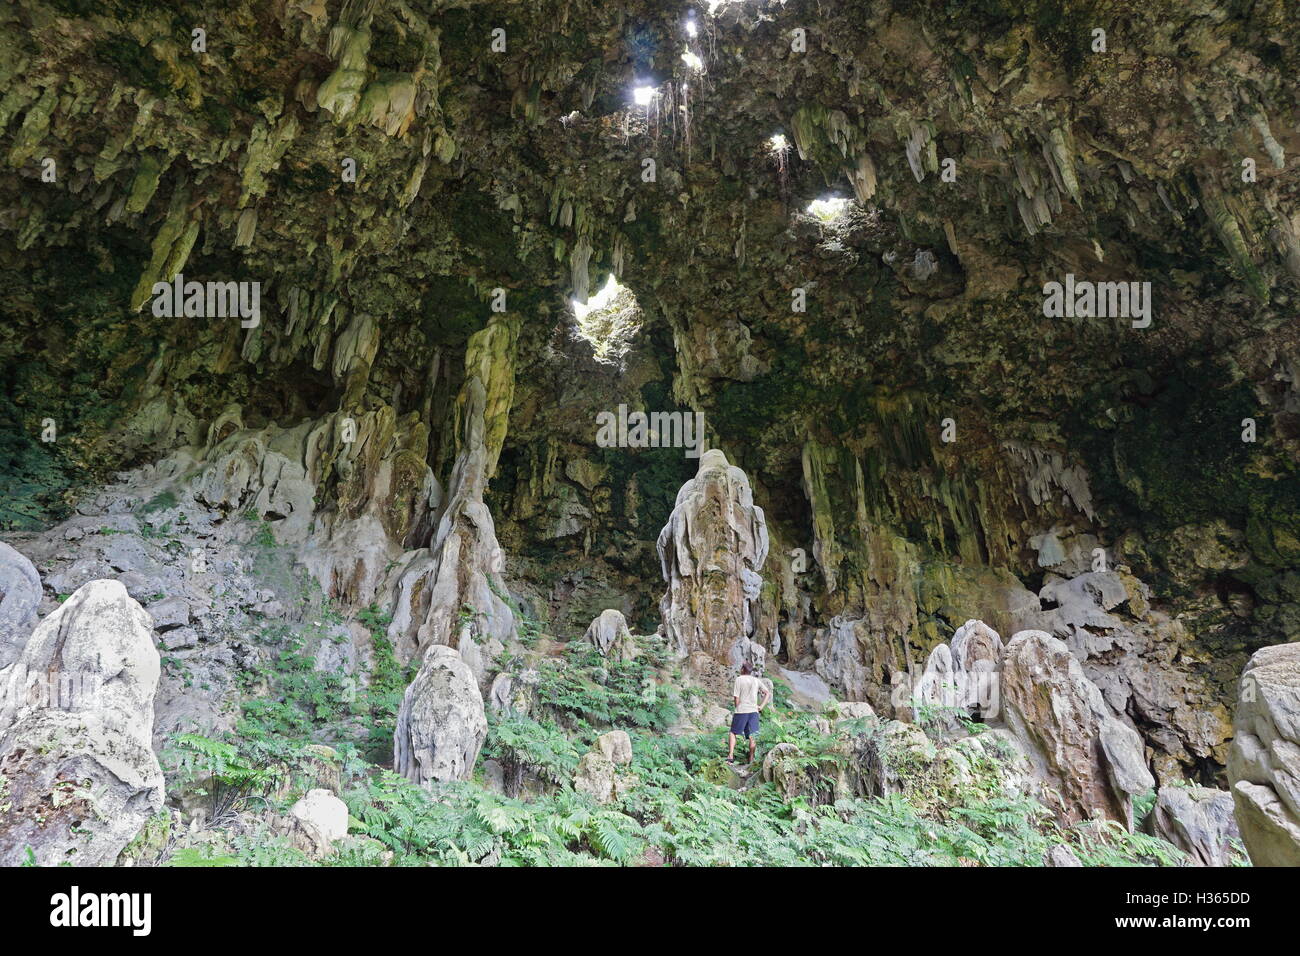 Große Kalkstein-Höhle mit Löchern in der Decke und ein Mann stand, Ana Aeo, Rurutu Island, Pacific, Austral, Französisch-Polynesien Stockfoto